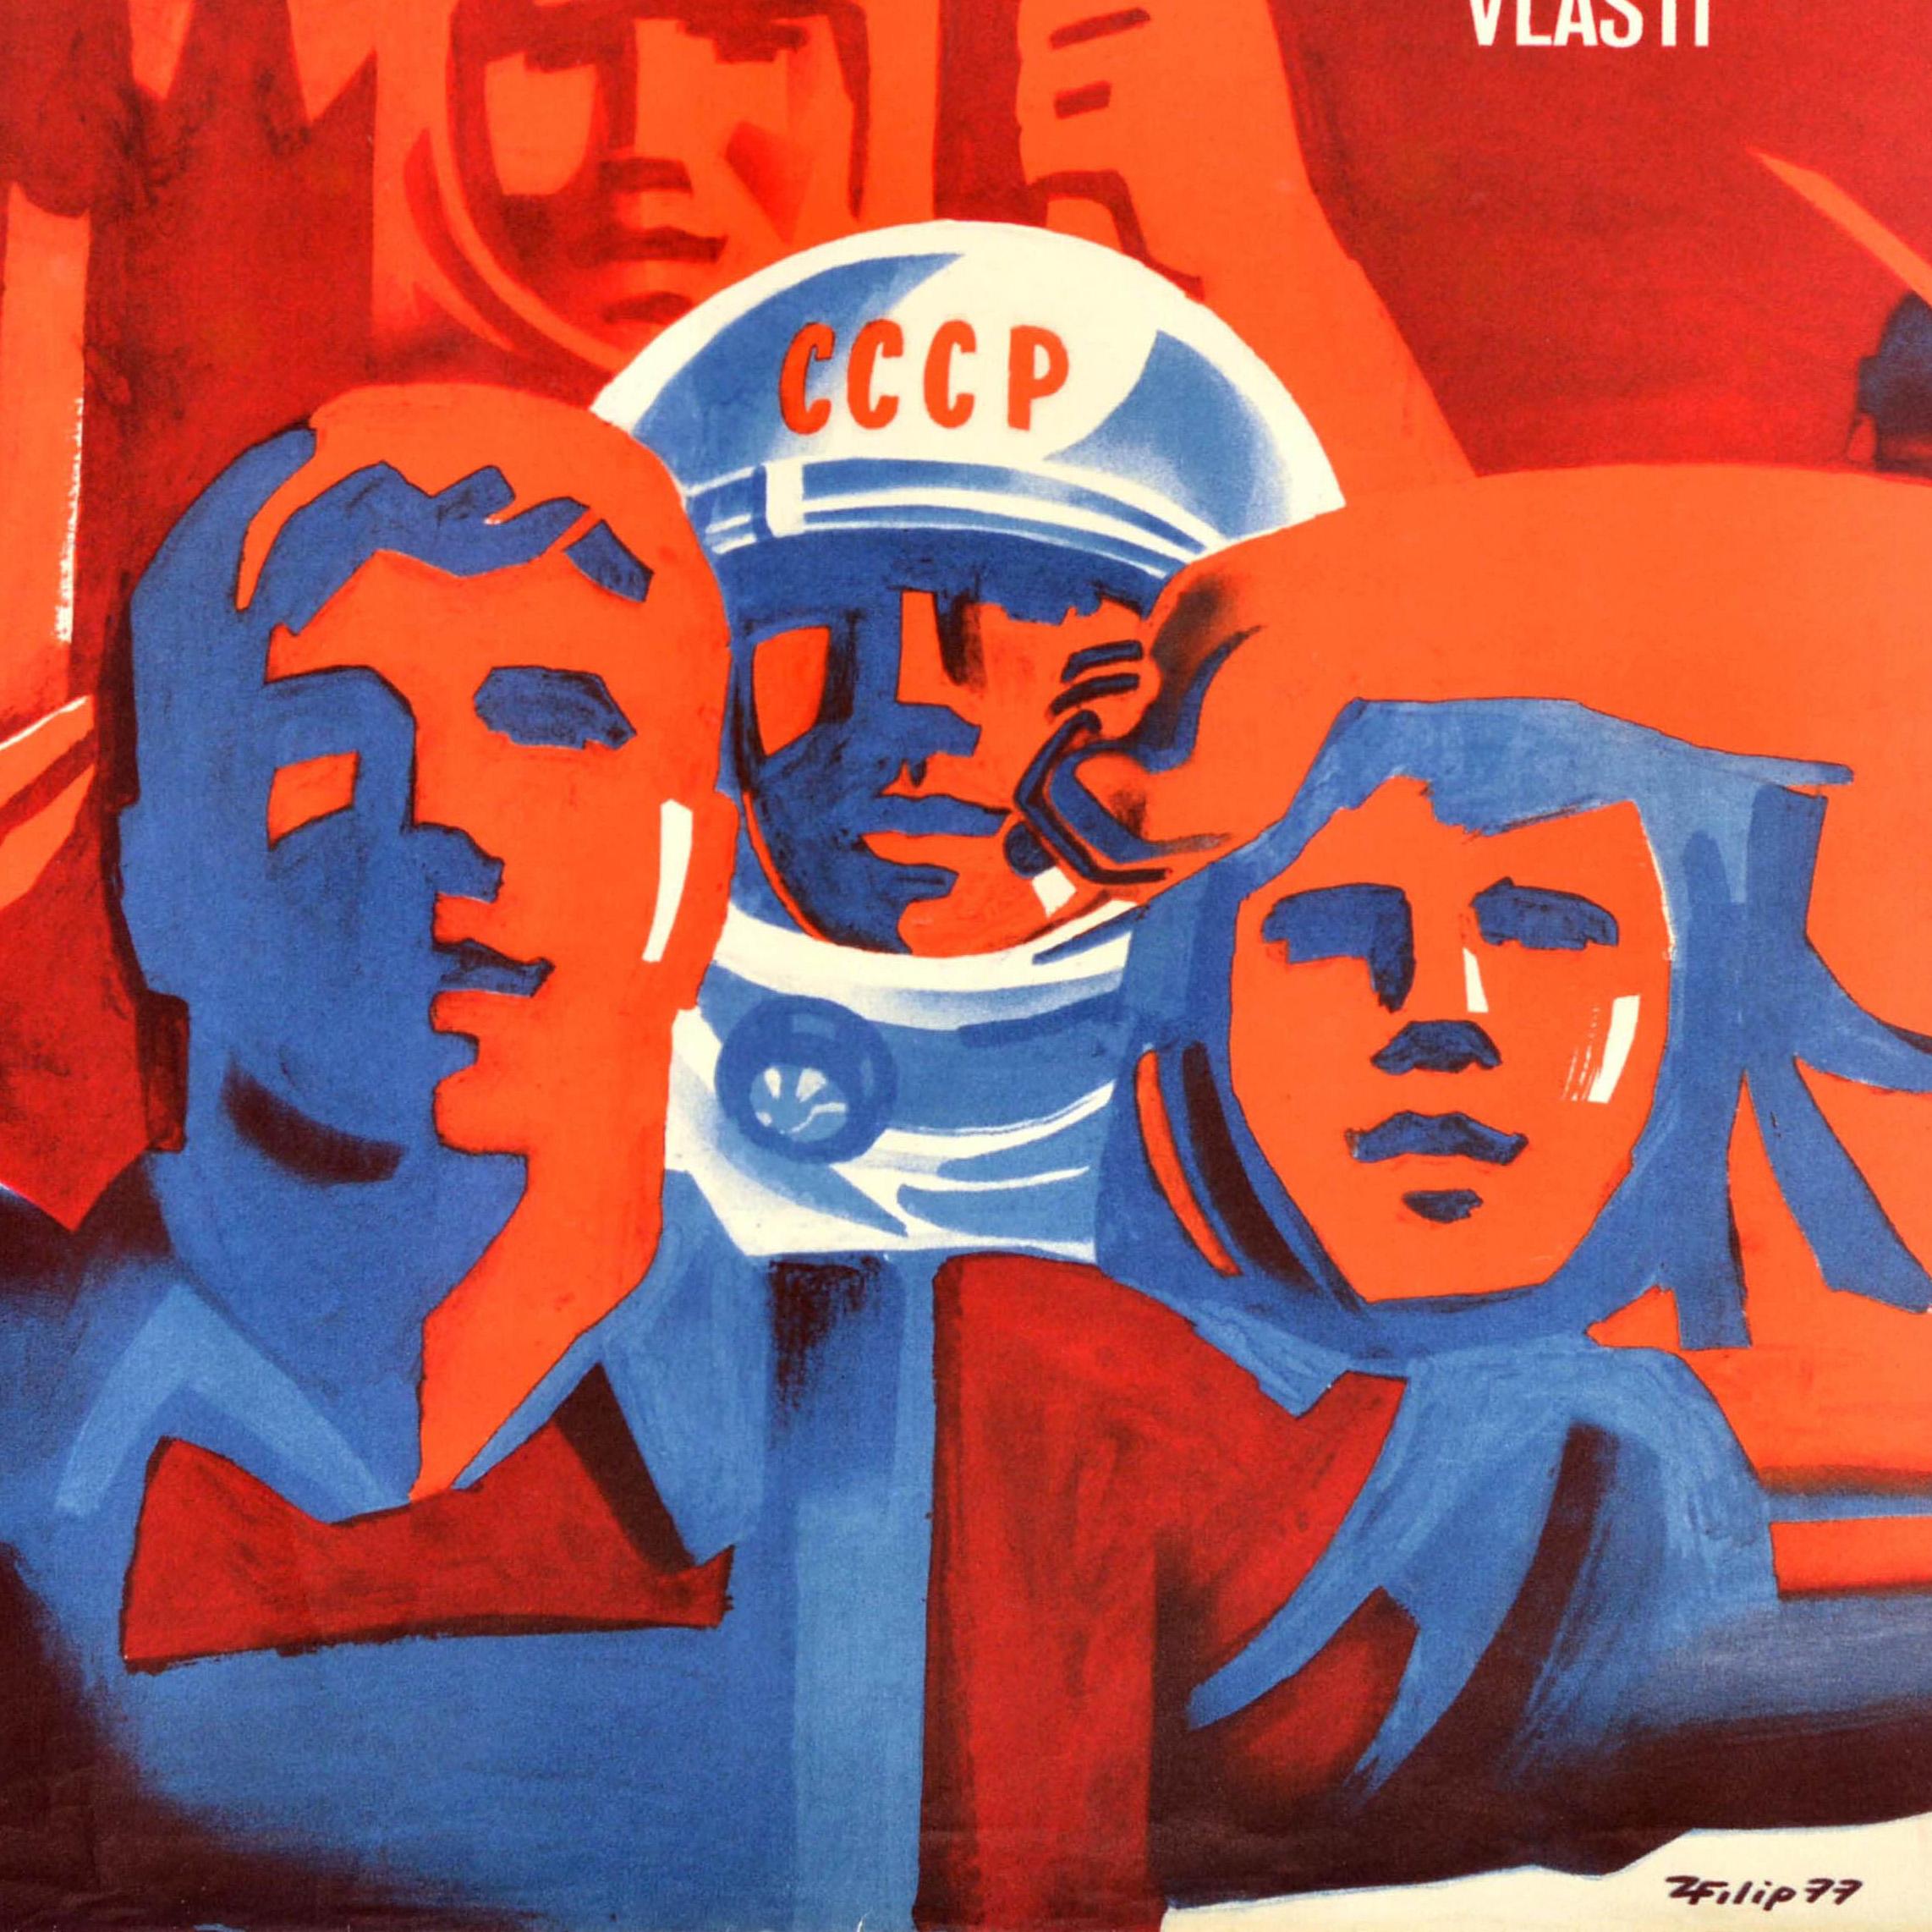 Affiche de propagande soviétique originale de la Révolution d'octobre en Tchécoslovaquie URSS - Print de Unknown